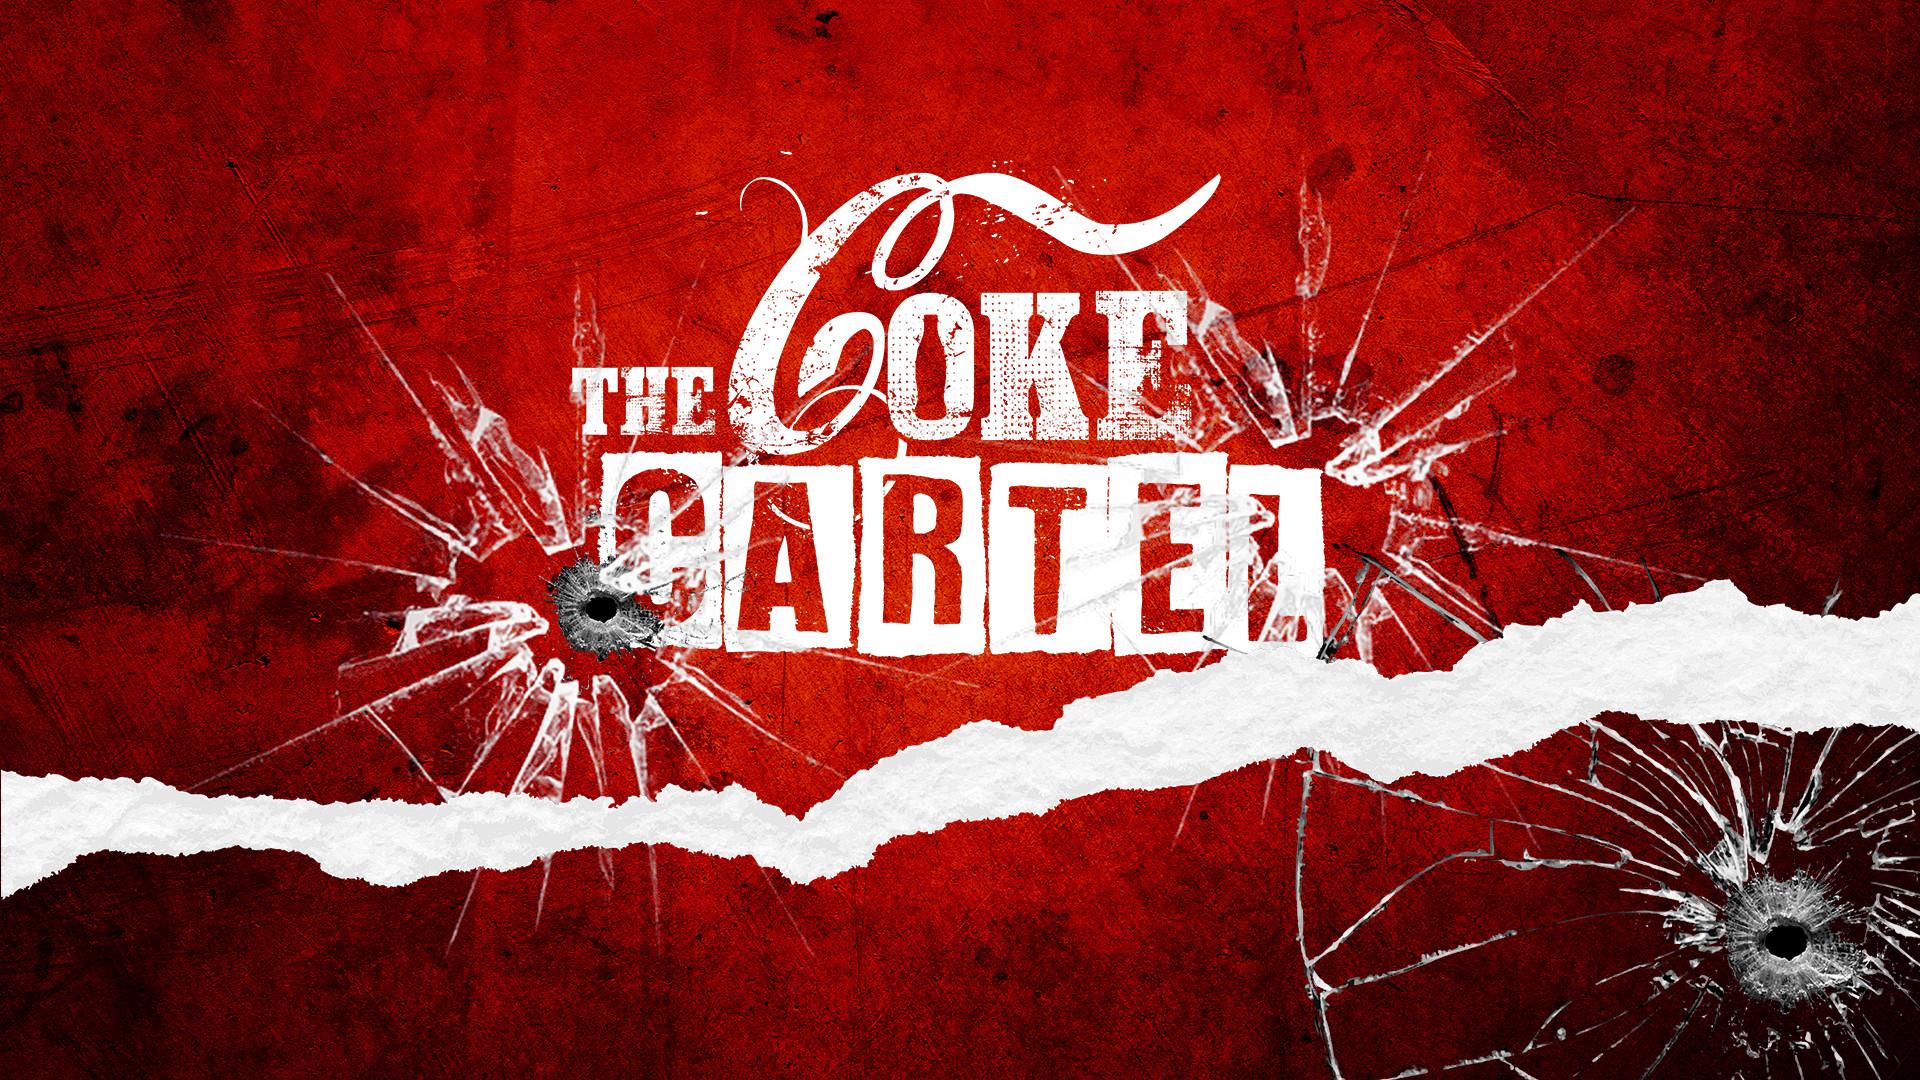 The Coke Cartel